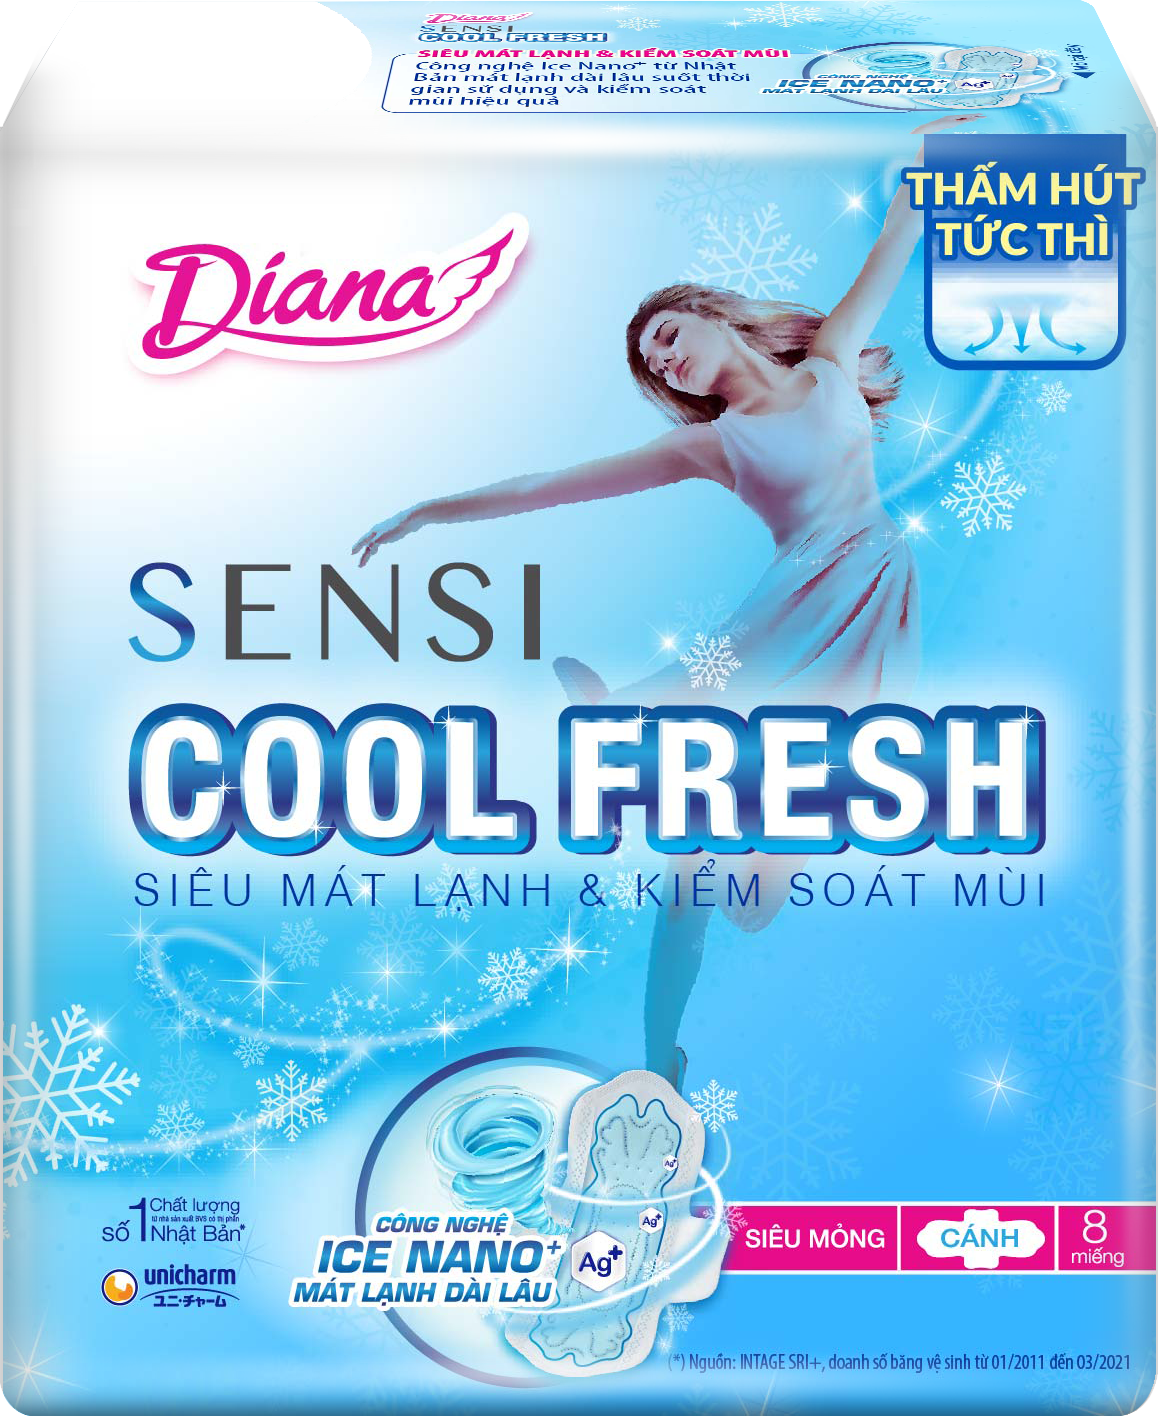 Diana SENSI Cool Fresh Siêu Mỏng Cách